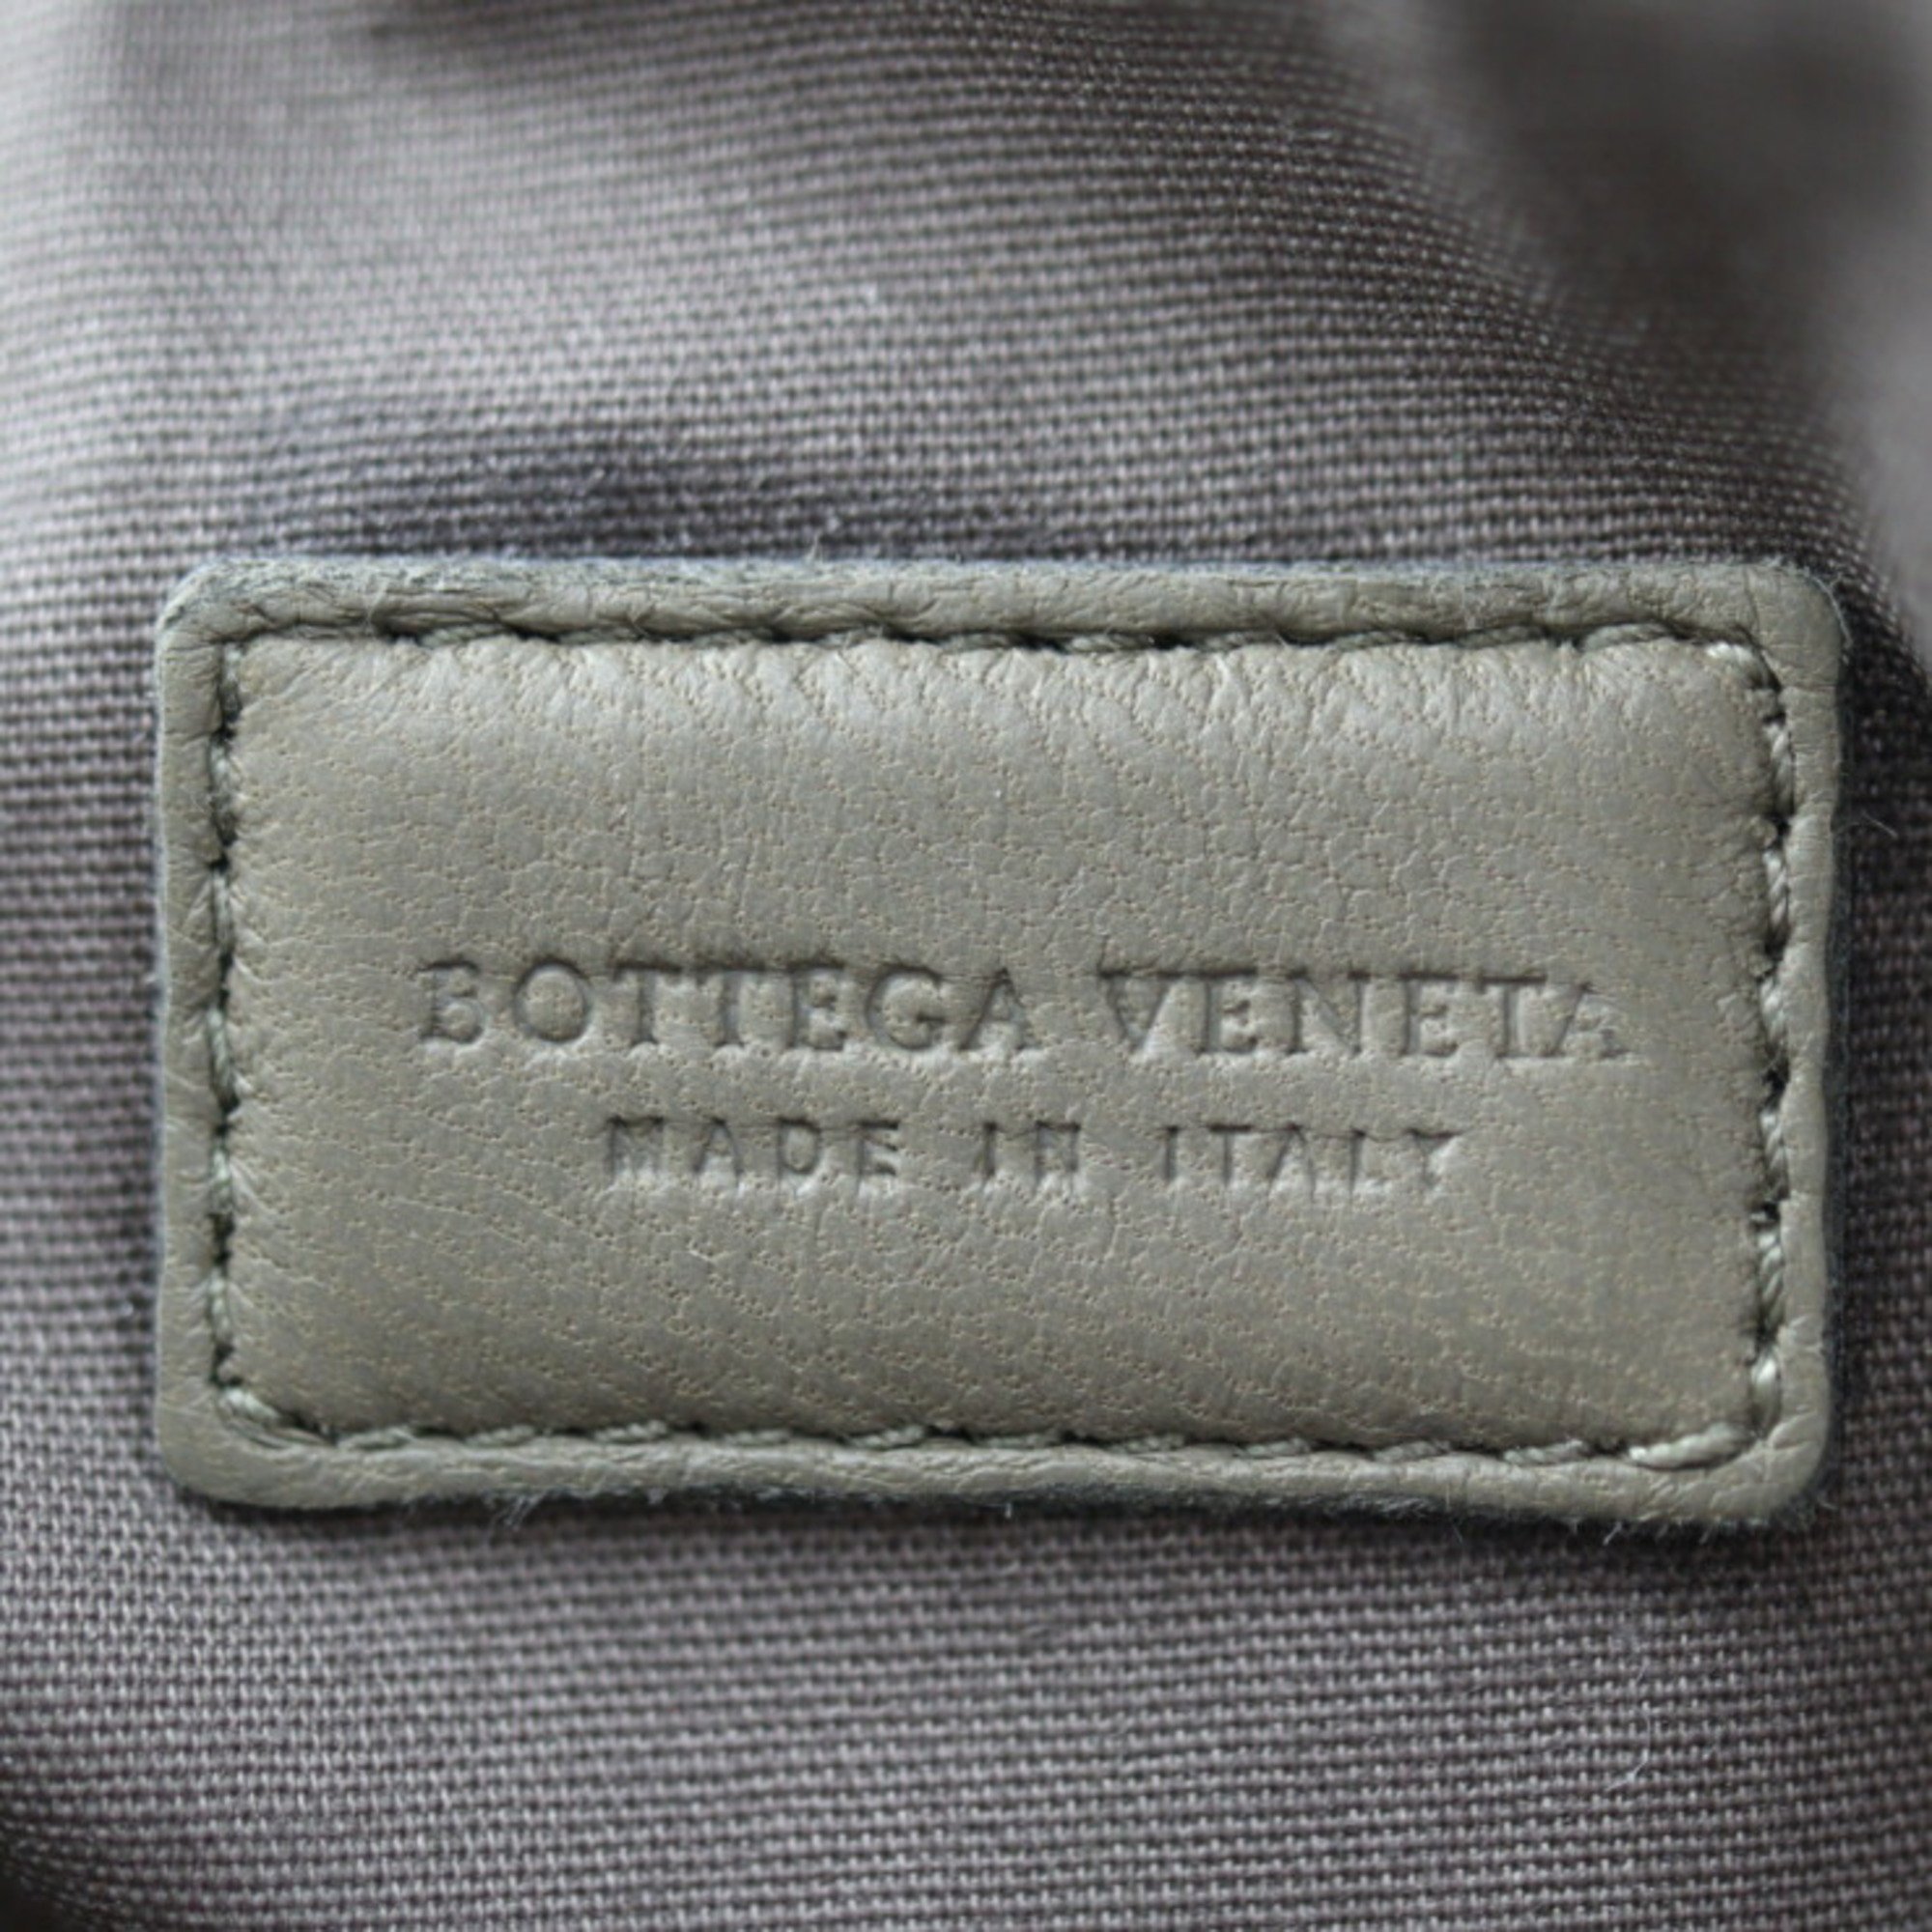 BOTTEGA VENETA Intrecciato Pouch 132534 Leather Greige Multi Second Bag